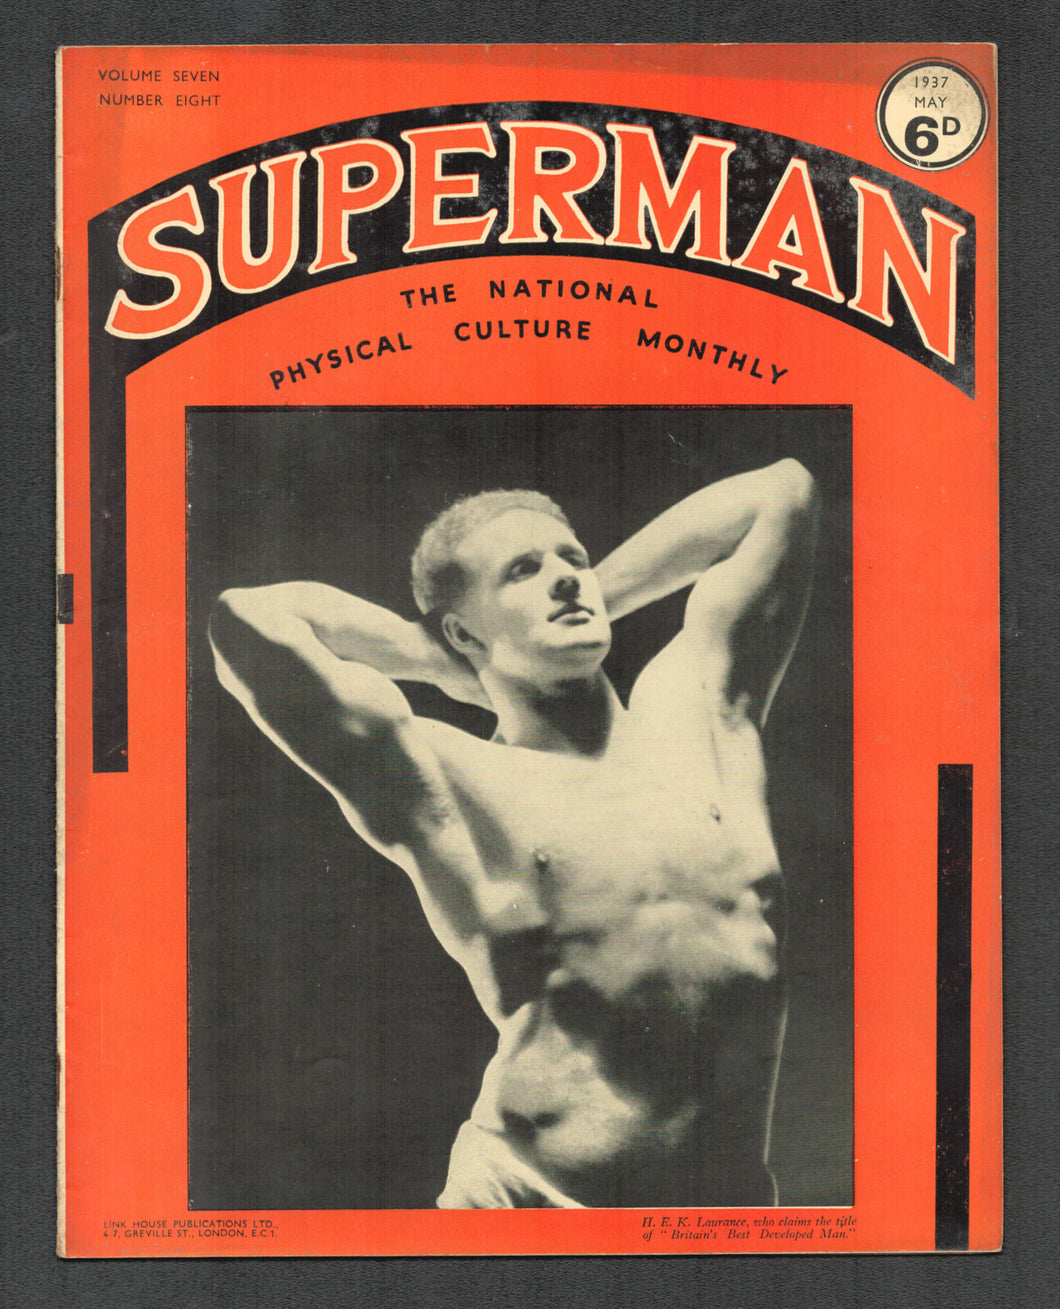 Superman Vol 7 No 8 May 1937